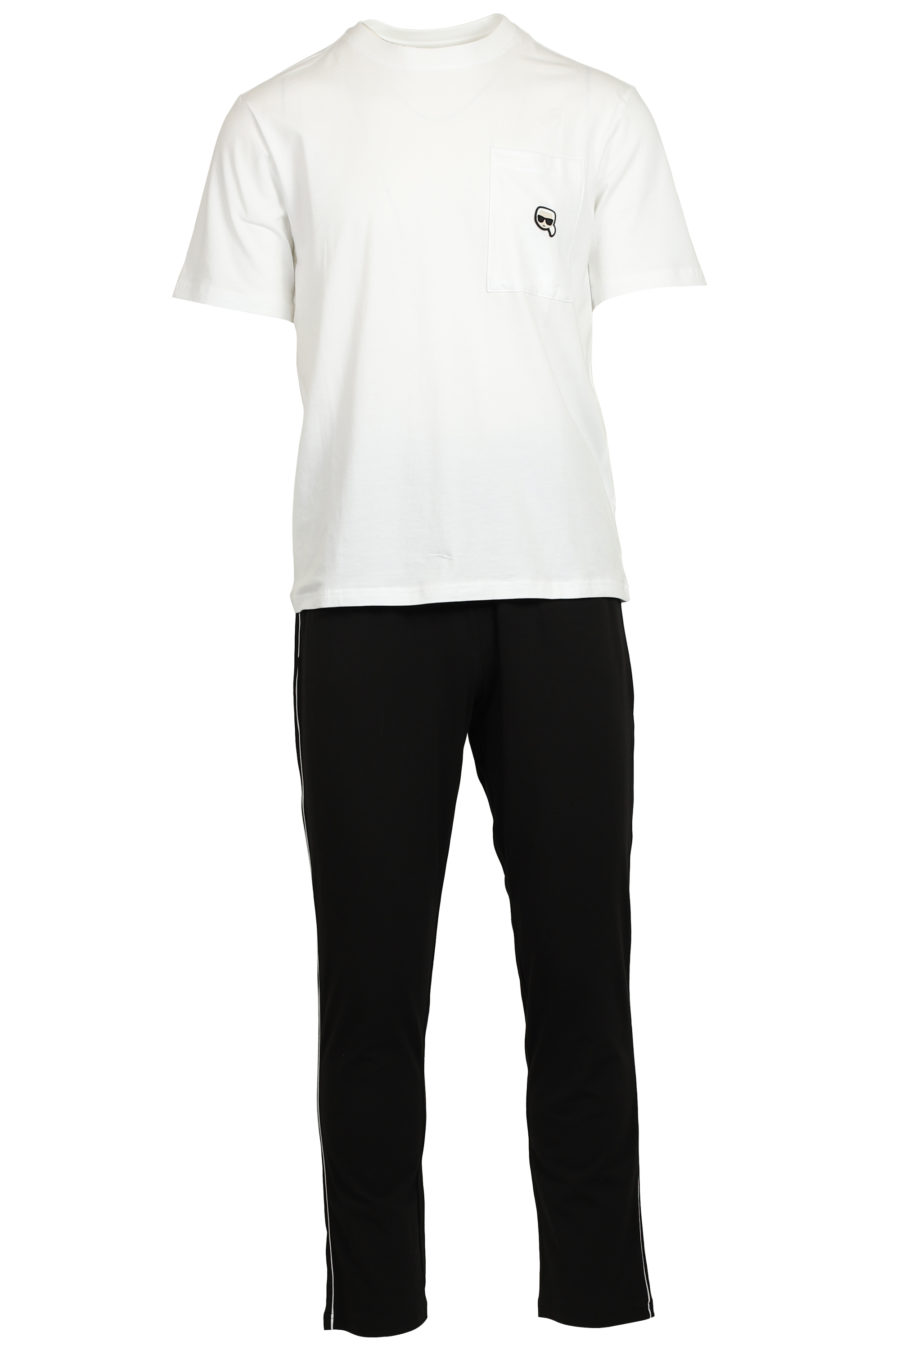 Schwarz-weißes Pyjama-Set mit Gummilogo - IMG 3737